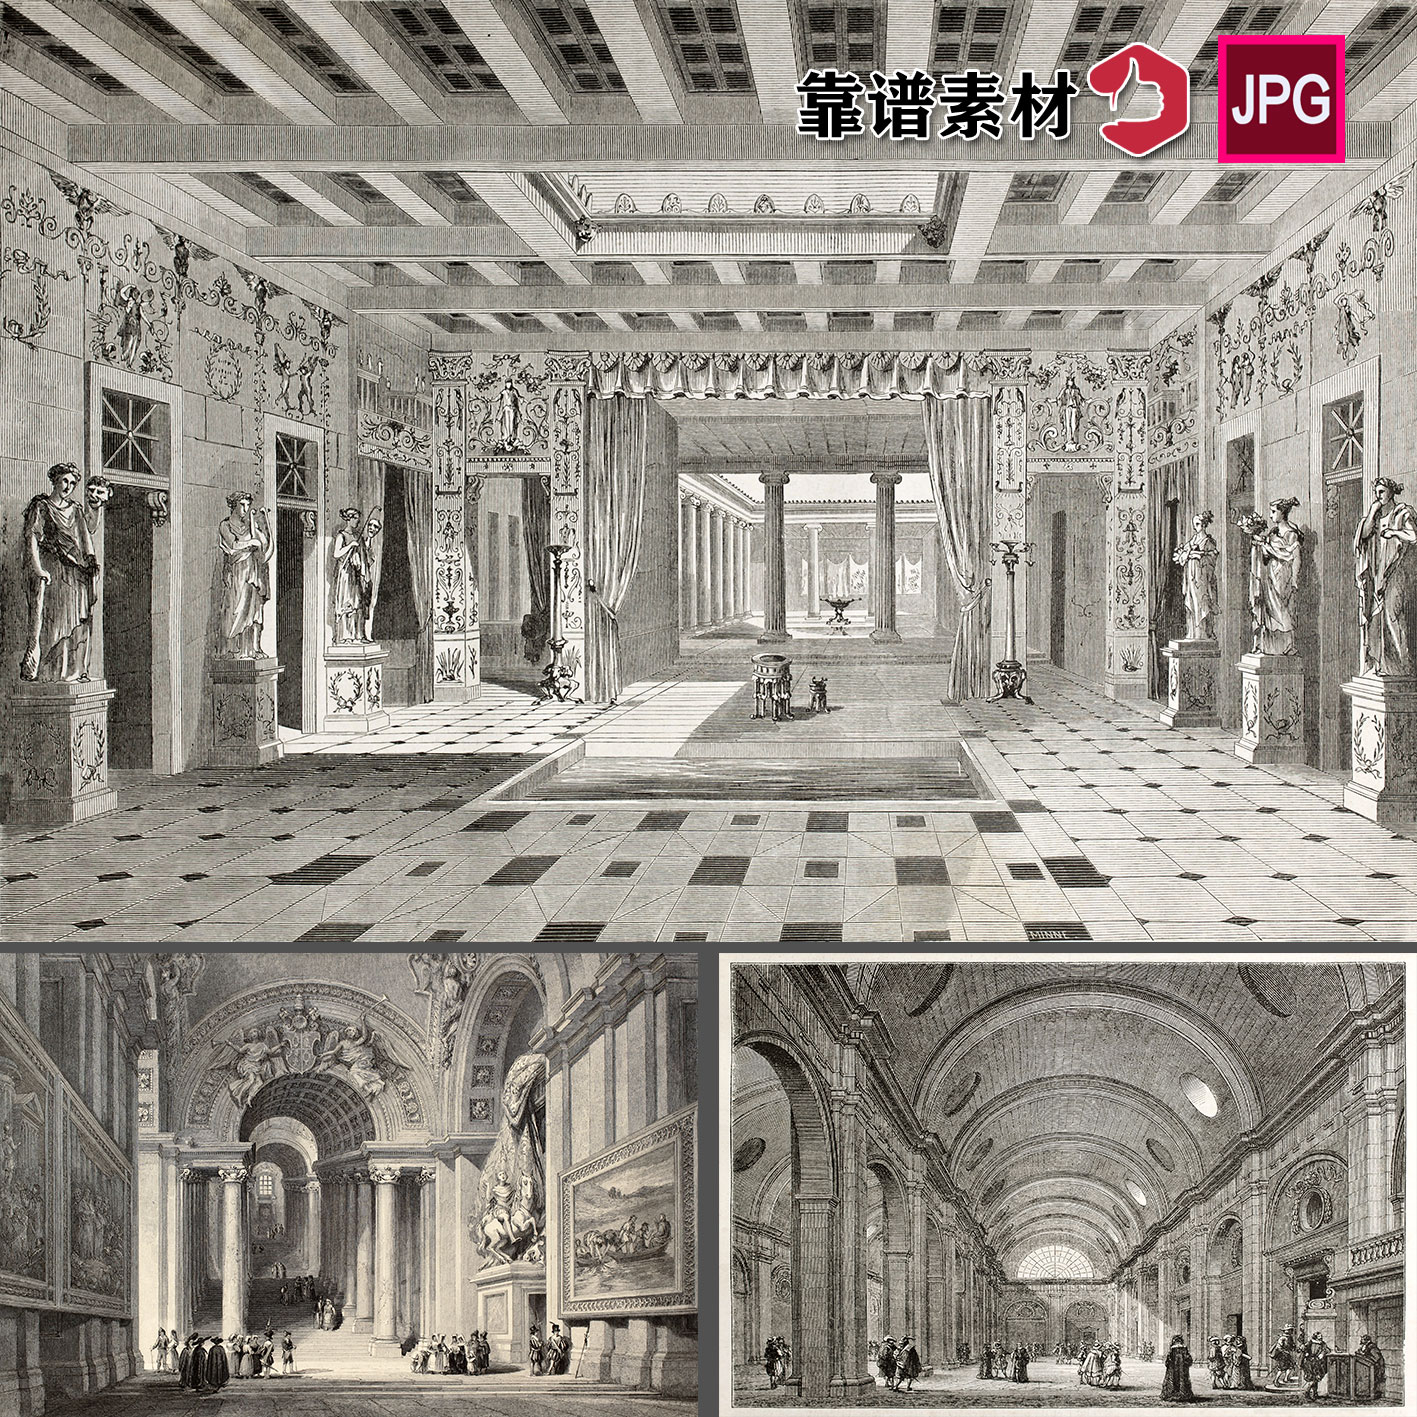 欧式古典大教堂大厅建筑手绘素描装饰画JPG图片设计素材